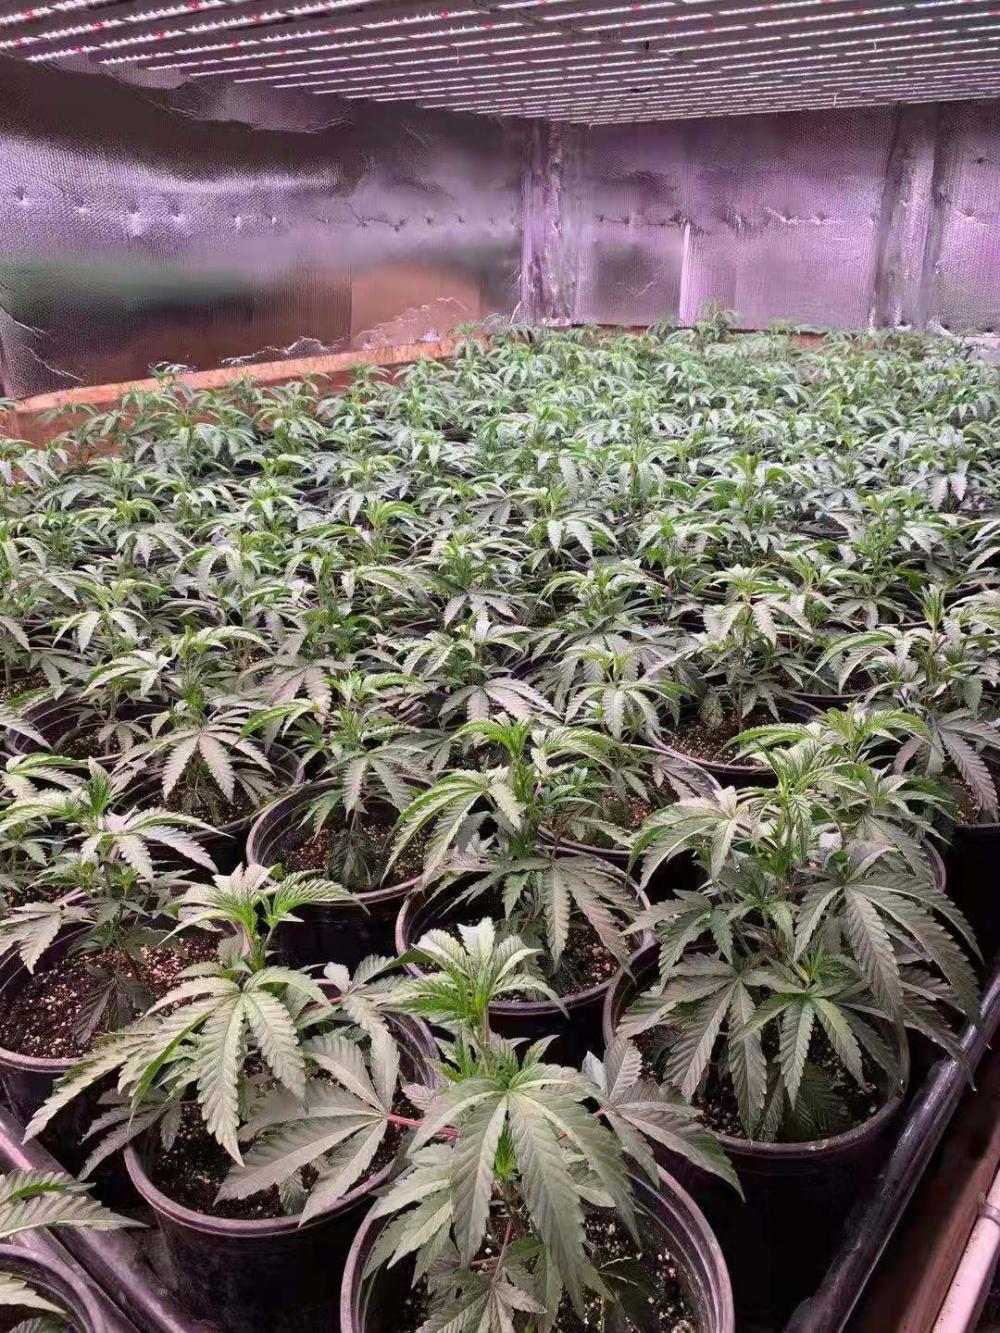 Cannabis Grow Light